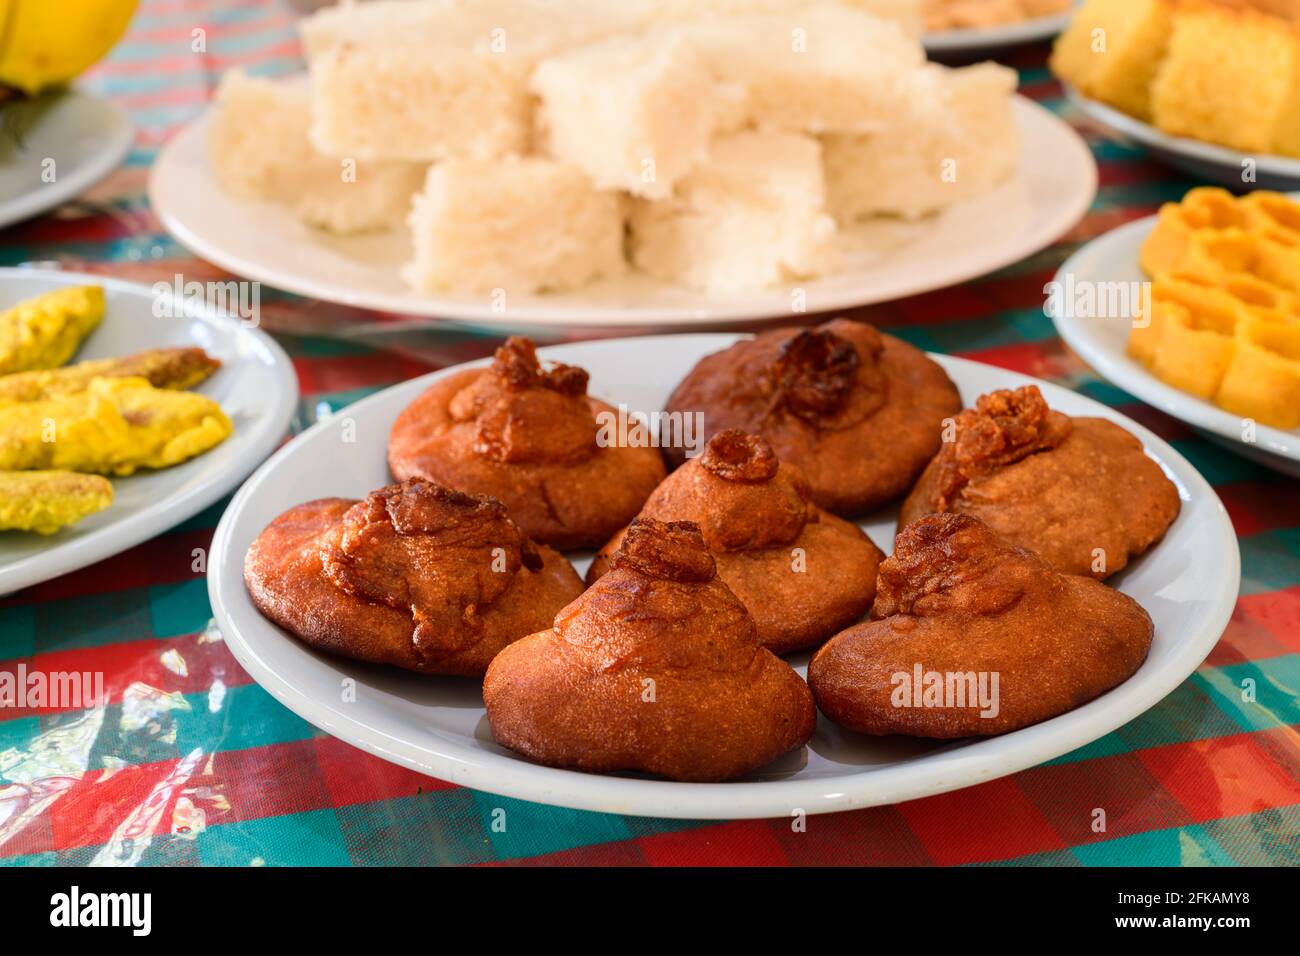 Sinala e Tamil festeggiamenti per i nuovi anni, dolci tradizionali e tavola da pranzo, Foto Stock